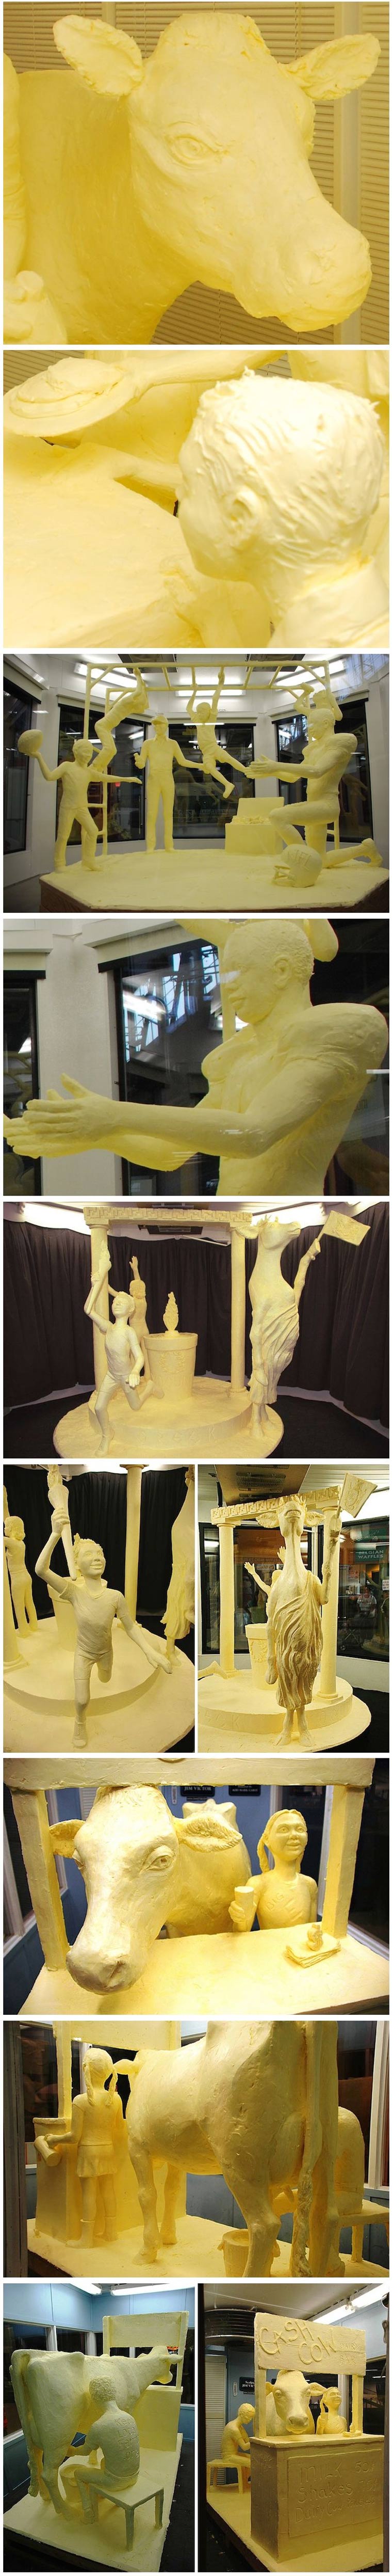 Butterskulpturen Butter_sculptures_02 